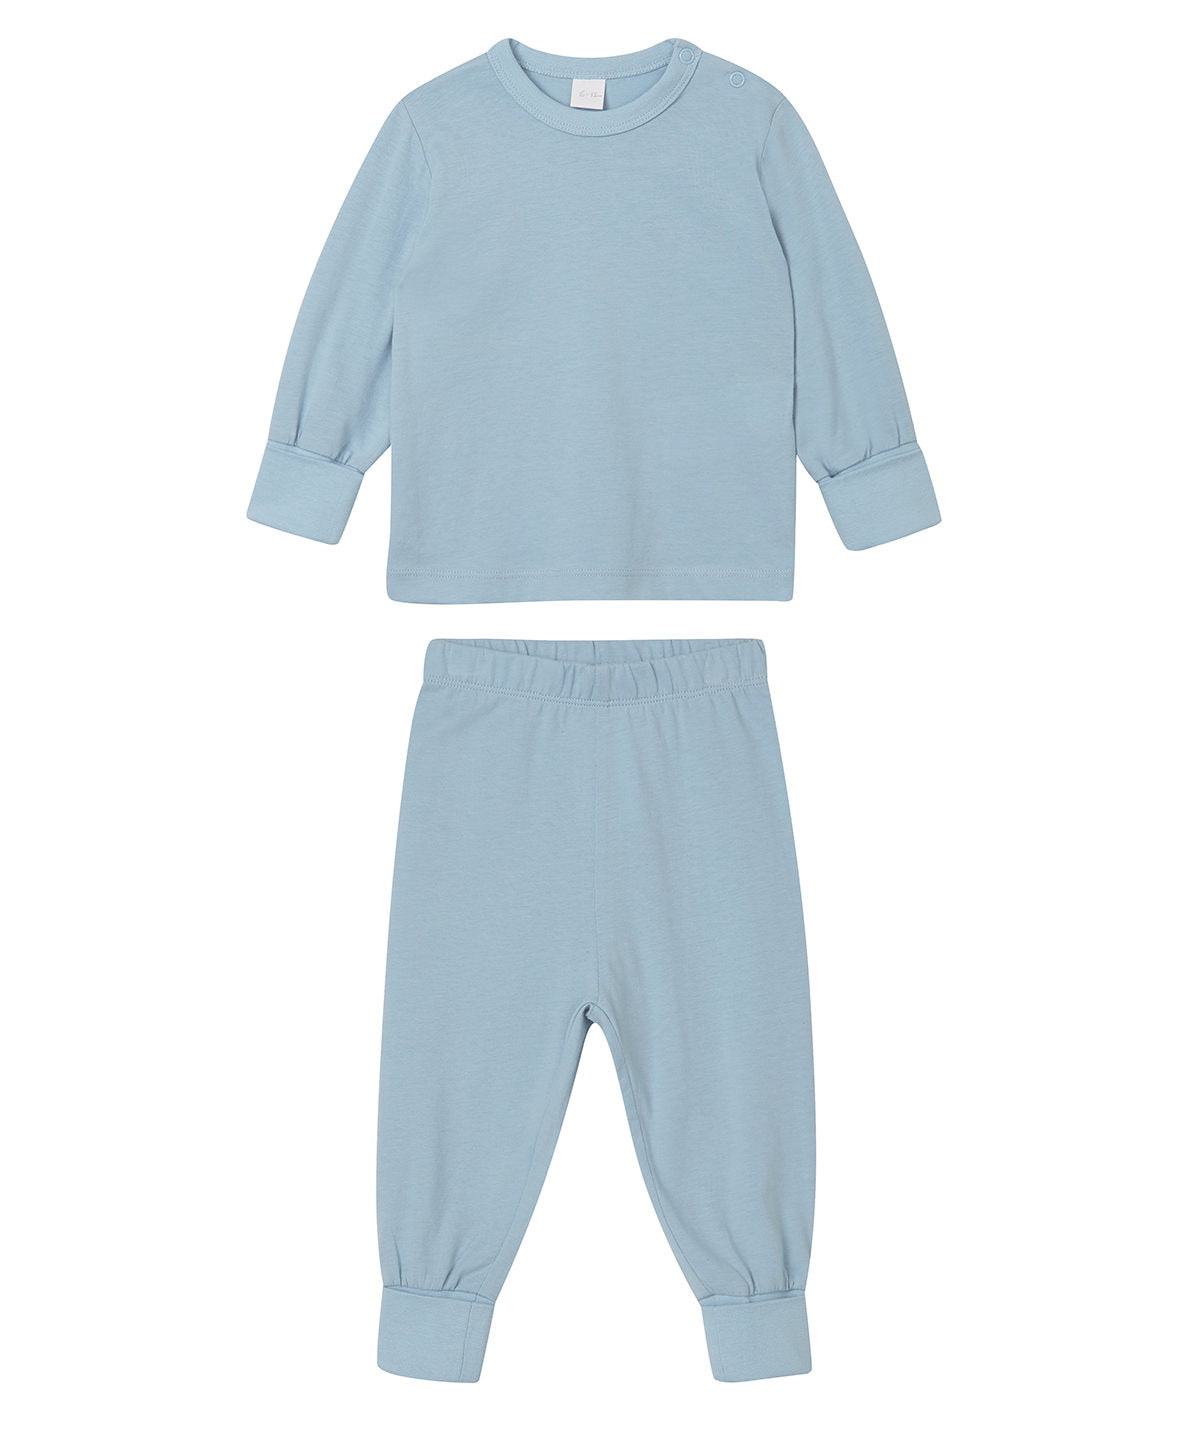 Náttföt - Baby Pyjamas